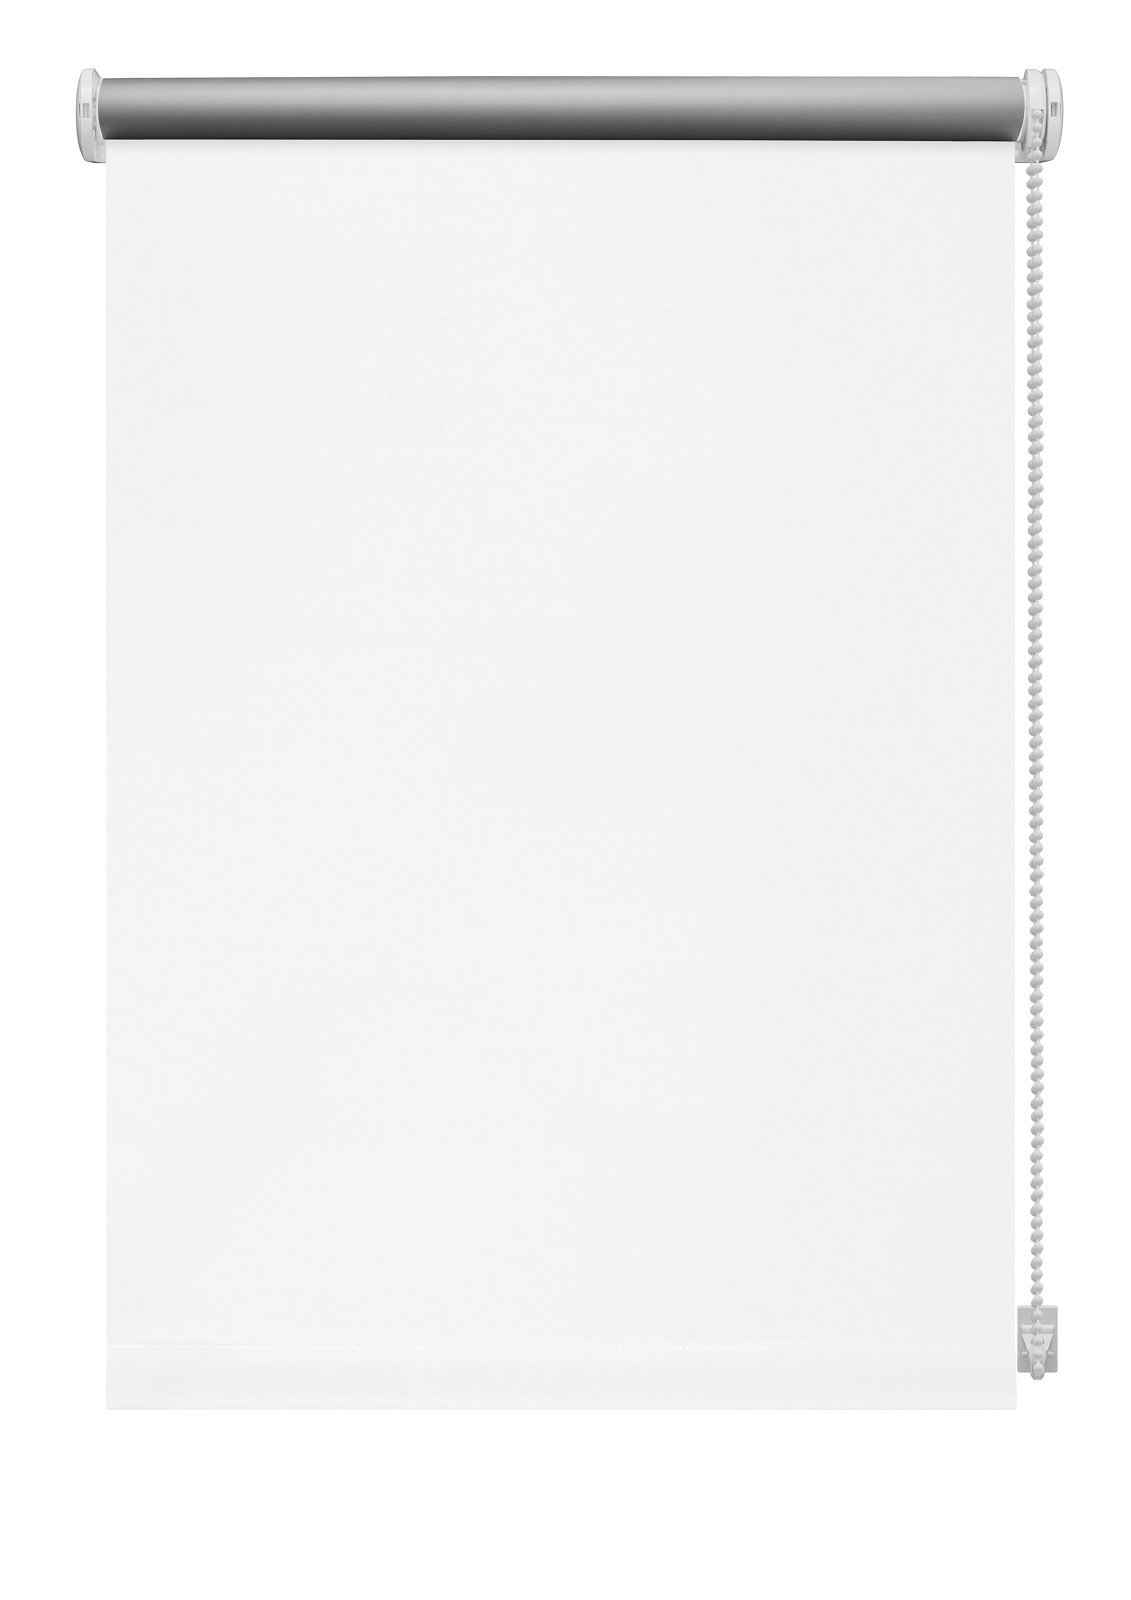 Klasikinė ritininė užuolaida THERMO 905, baltos sp., 120 x 210 cm - 2